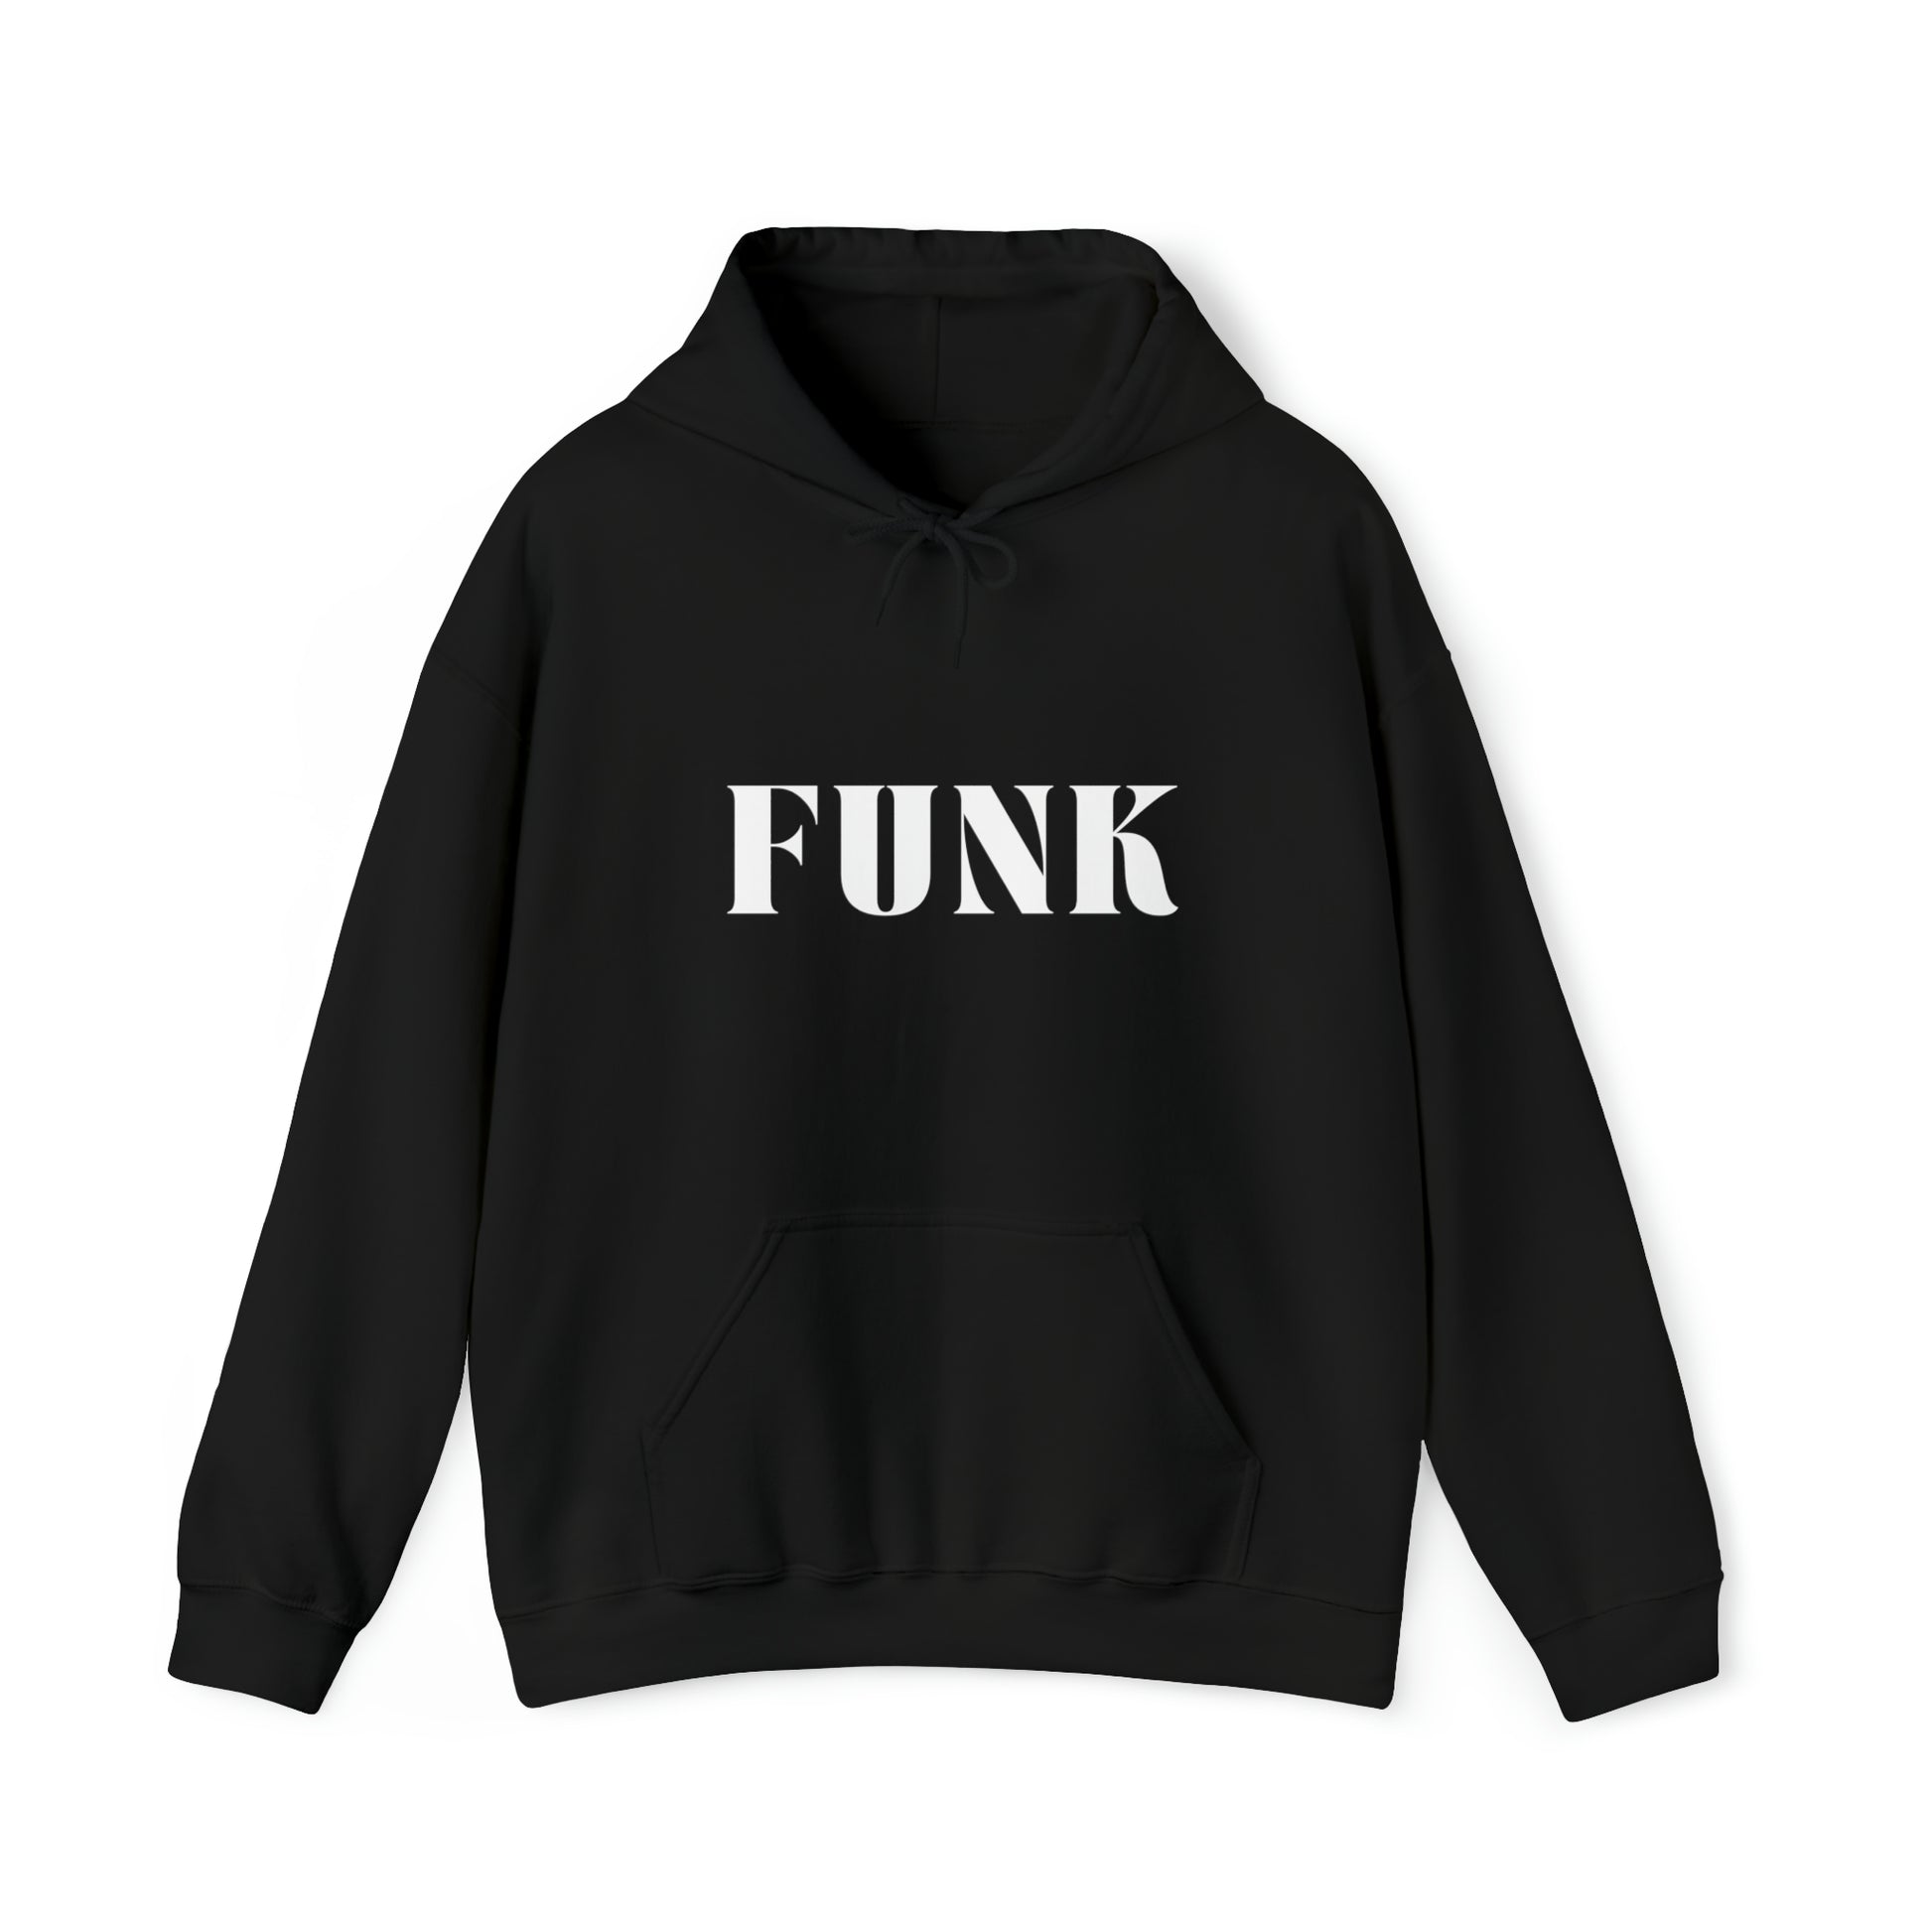 S Black Funk Hoodie from HoodySZN.com